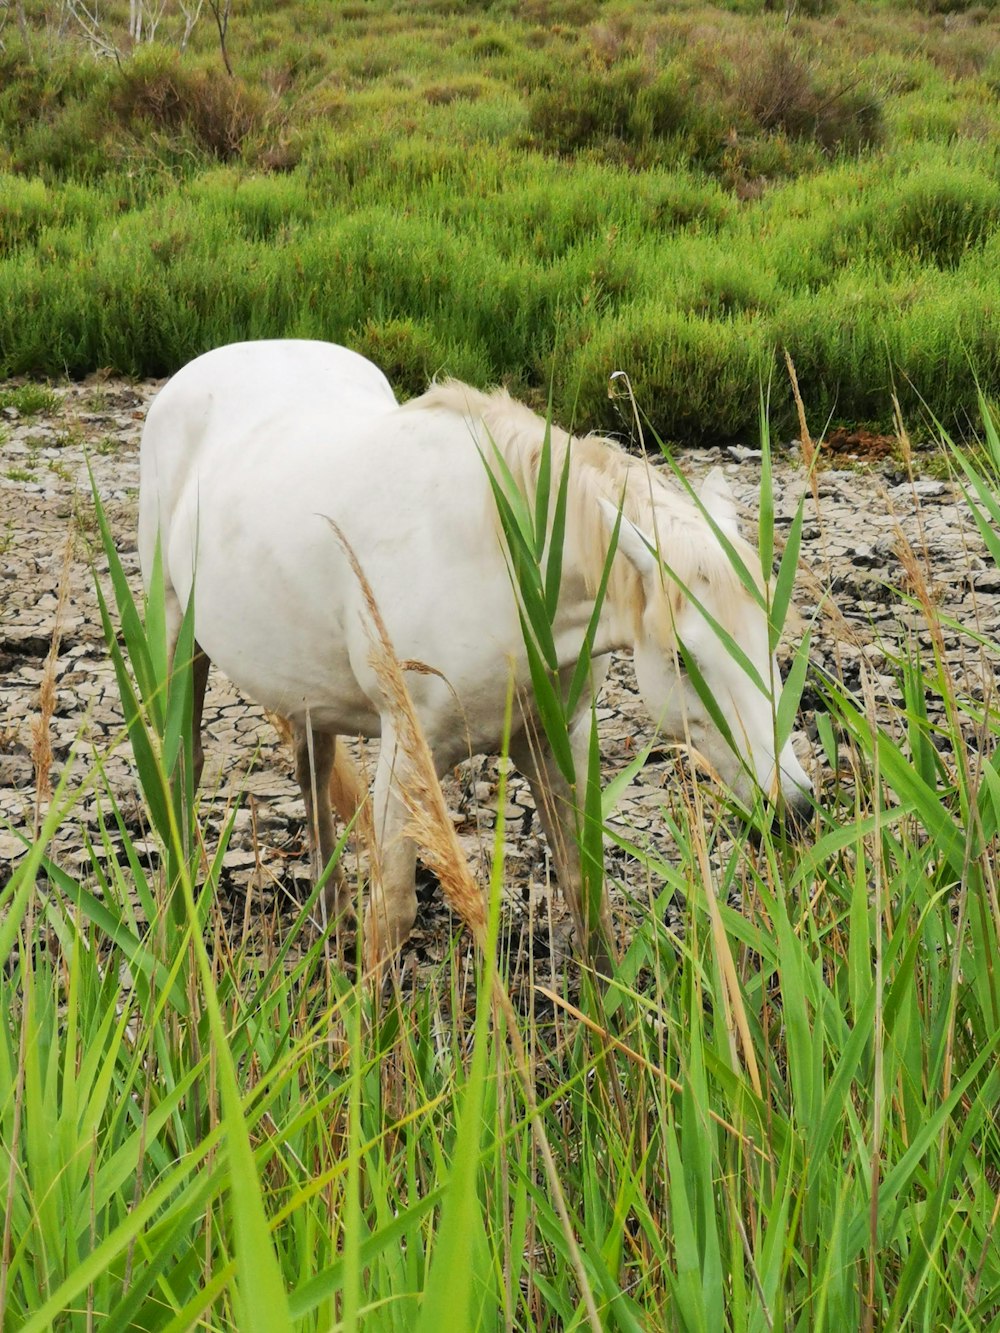 a white horse walking through a lush green field